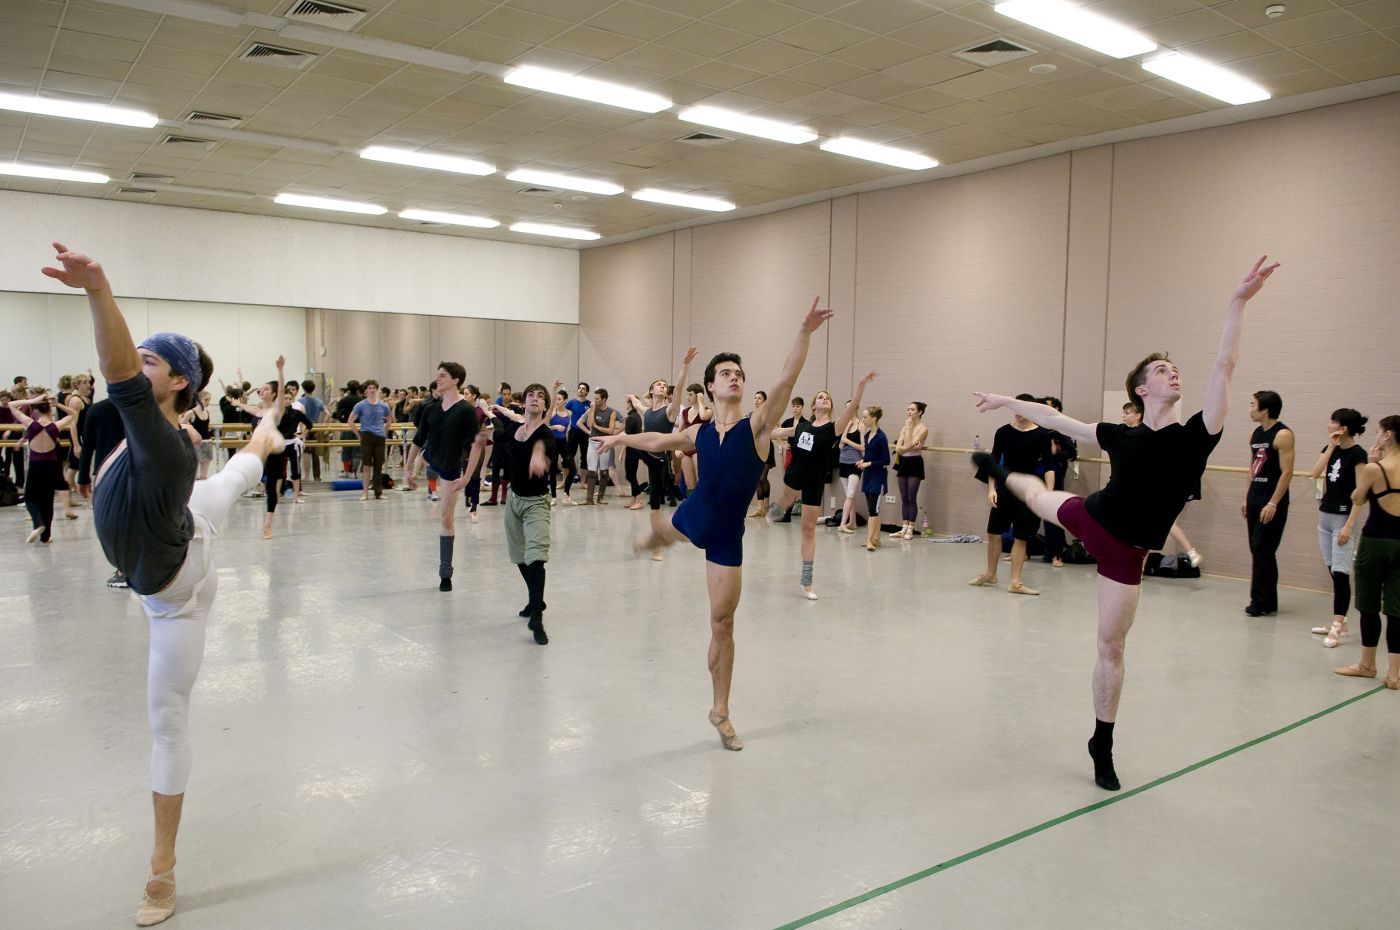 11.15-11.45 - repetitie voorstelling met corps de ballet